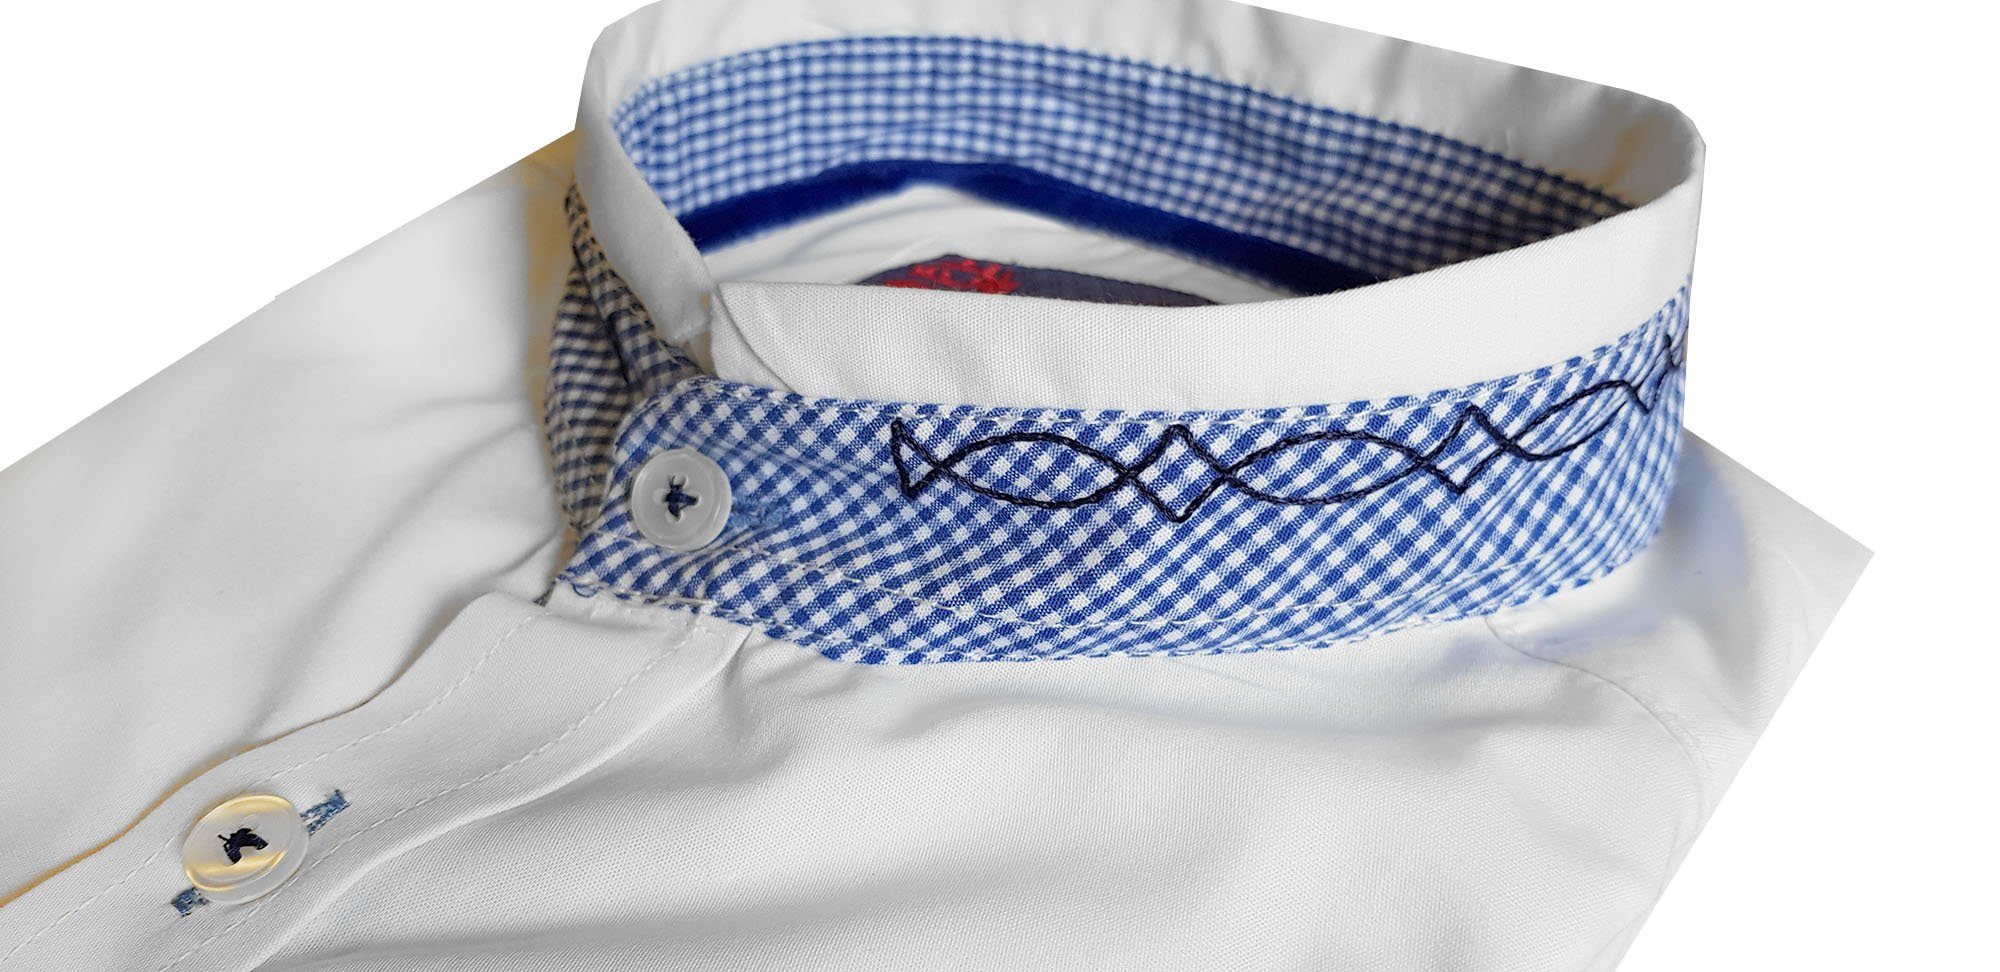 Trachtenhemd Moschen-Bayern Herrenhemd Wiesn-Hemd Trachtenhemd Weiß-Blau Stickerei Stehkragen Hirsch FIT SLIM Langarm Herren